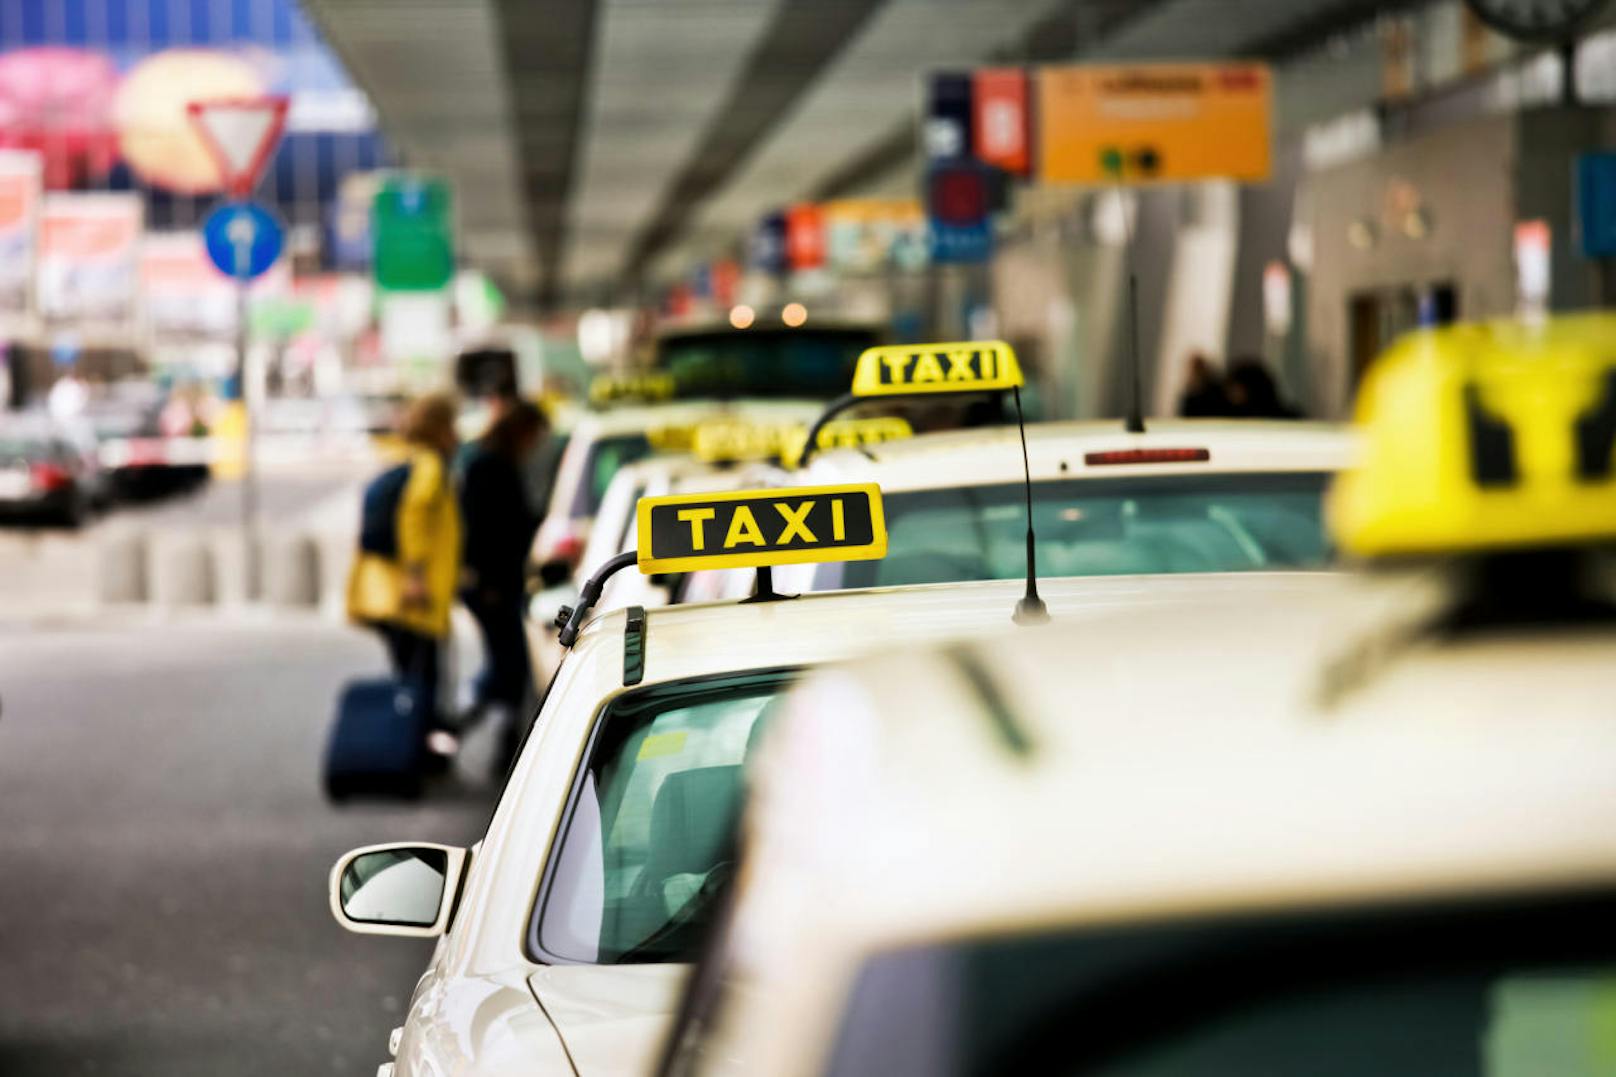 Klassische Taxis sind schon heutzutage in Bedrängnis. Bereits 2020 will man in Japan mit führerlosen Taxis starten. 